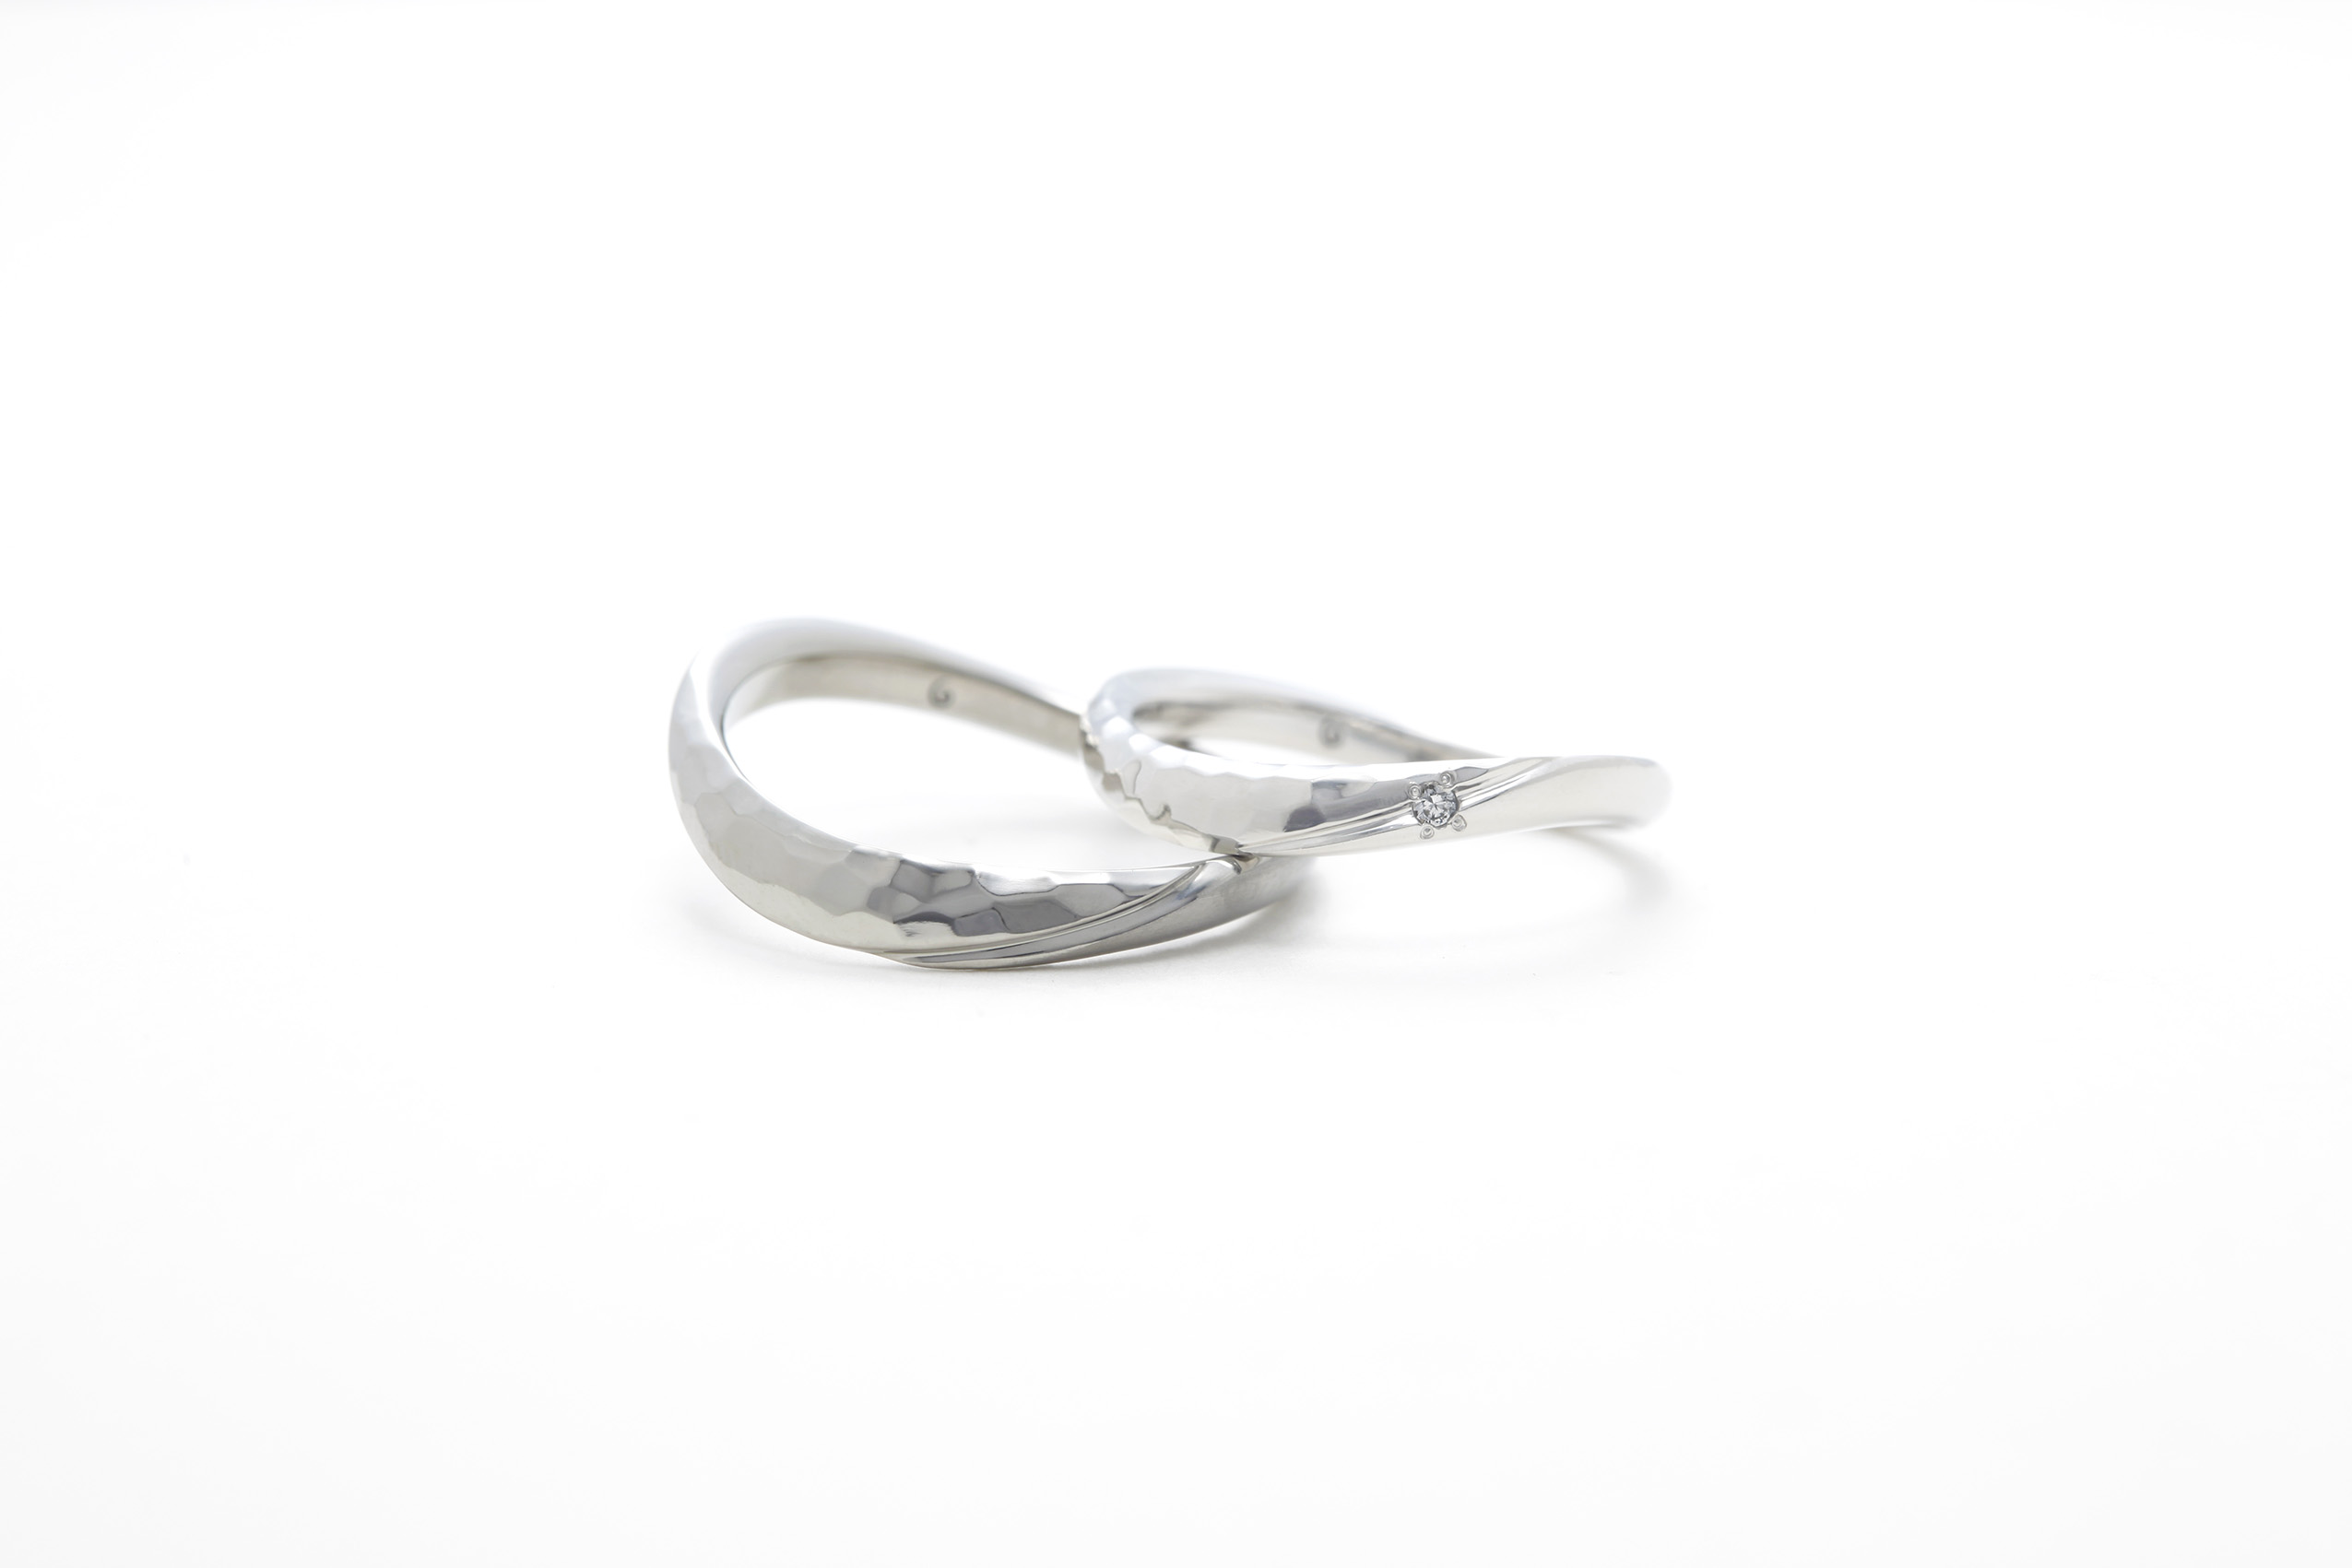 SORAの槌目の結婚指輪「コントレイル」